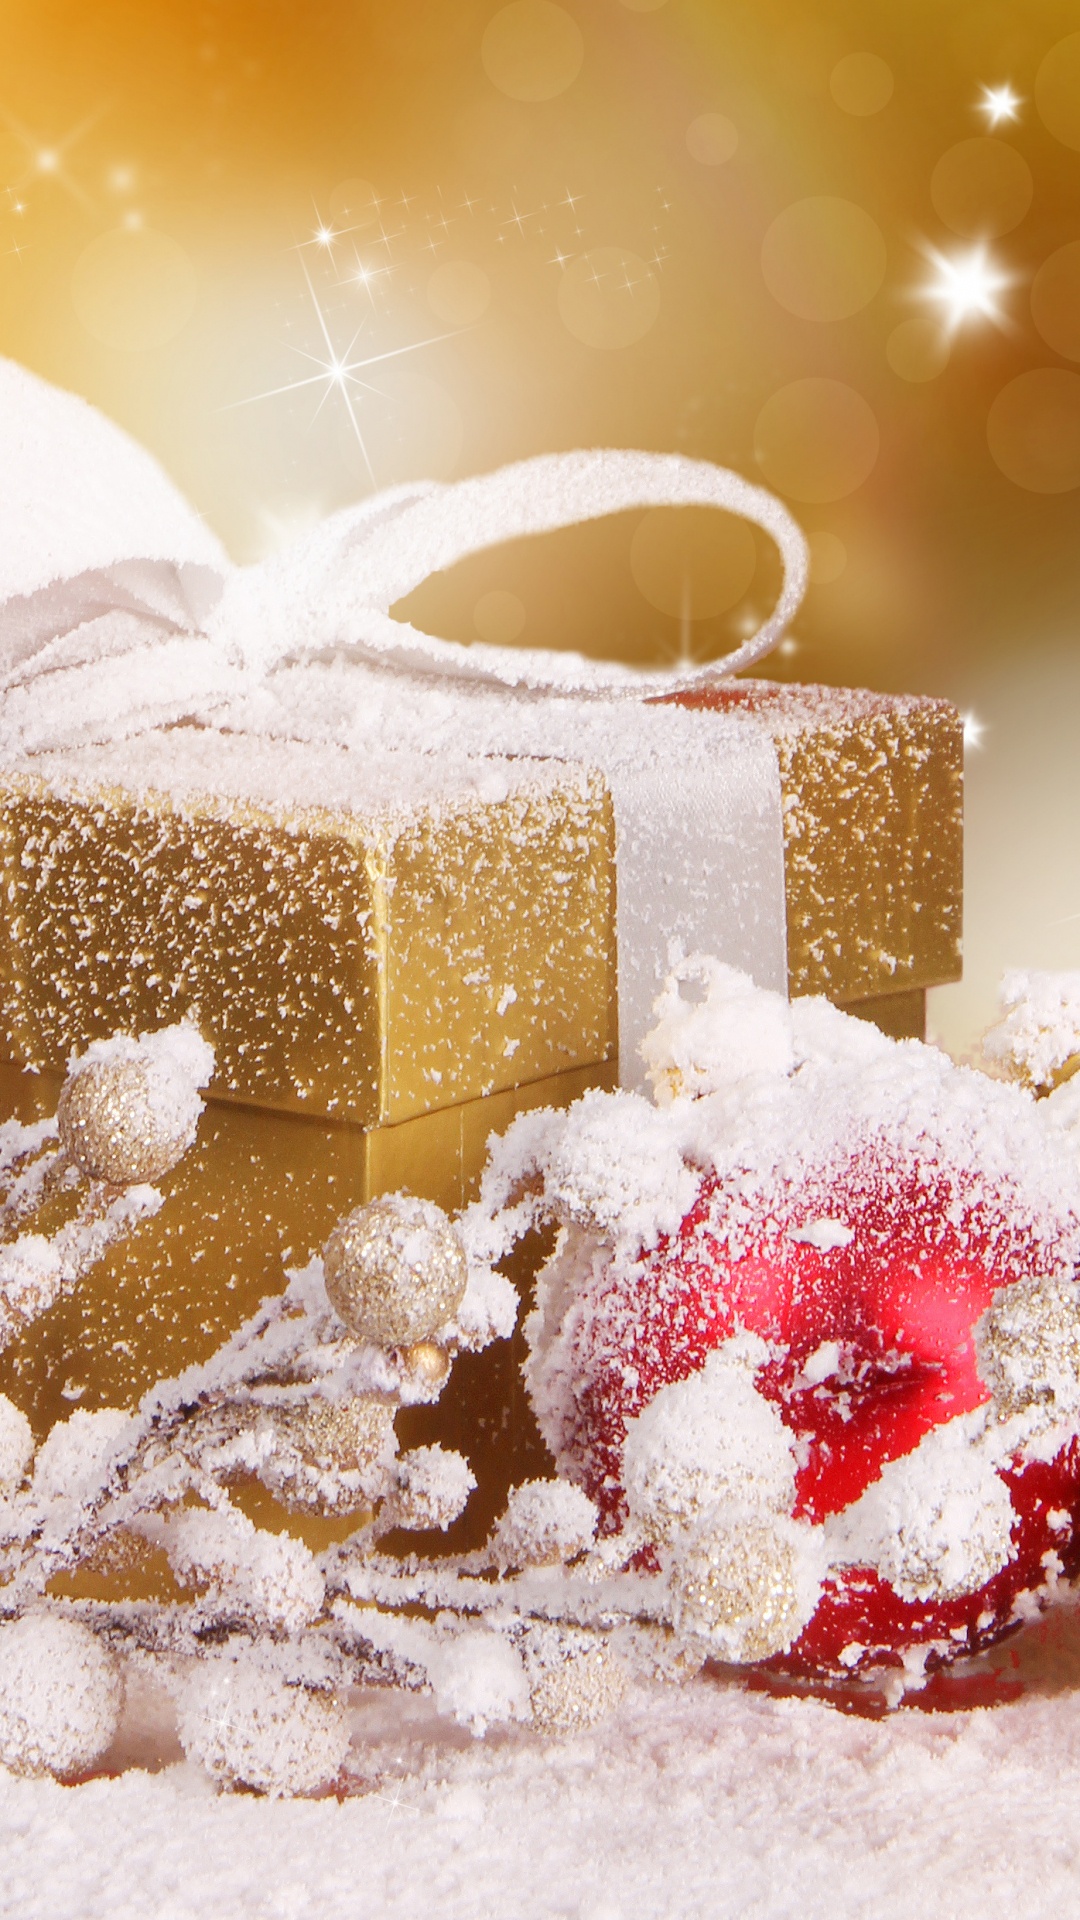 礼物, 圣诞节礼物, 圣诞节那天, 食品, 圣诞节 壁纸 1080x1920 允许